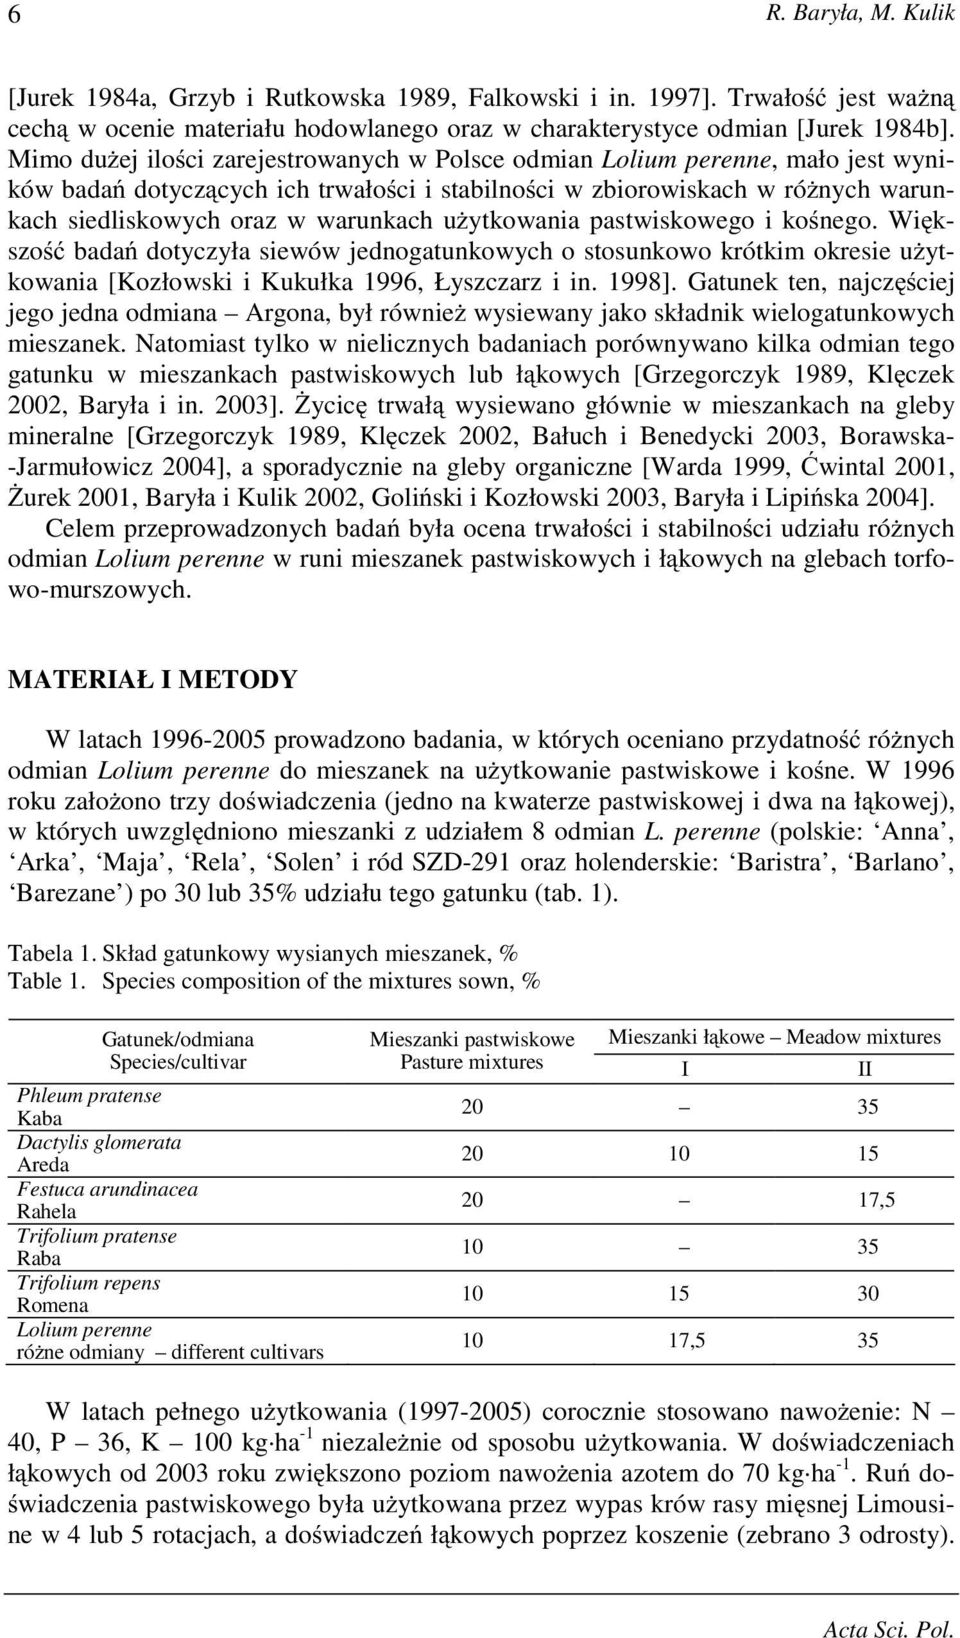 uŝytkowania pastwiskowego i kośnego. Większość badań dotyczyła siewów jednogatunkowych o stosunkowo krótkim okresie uŝytkowania [Kozłowski i Kukułka 1996, Łyszczarz i in. 1998].